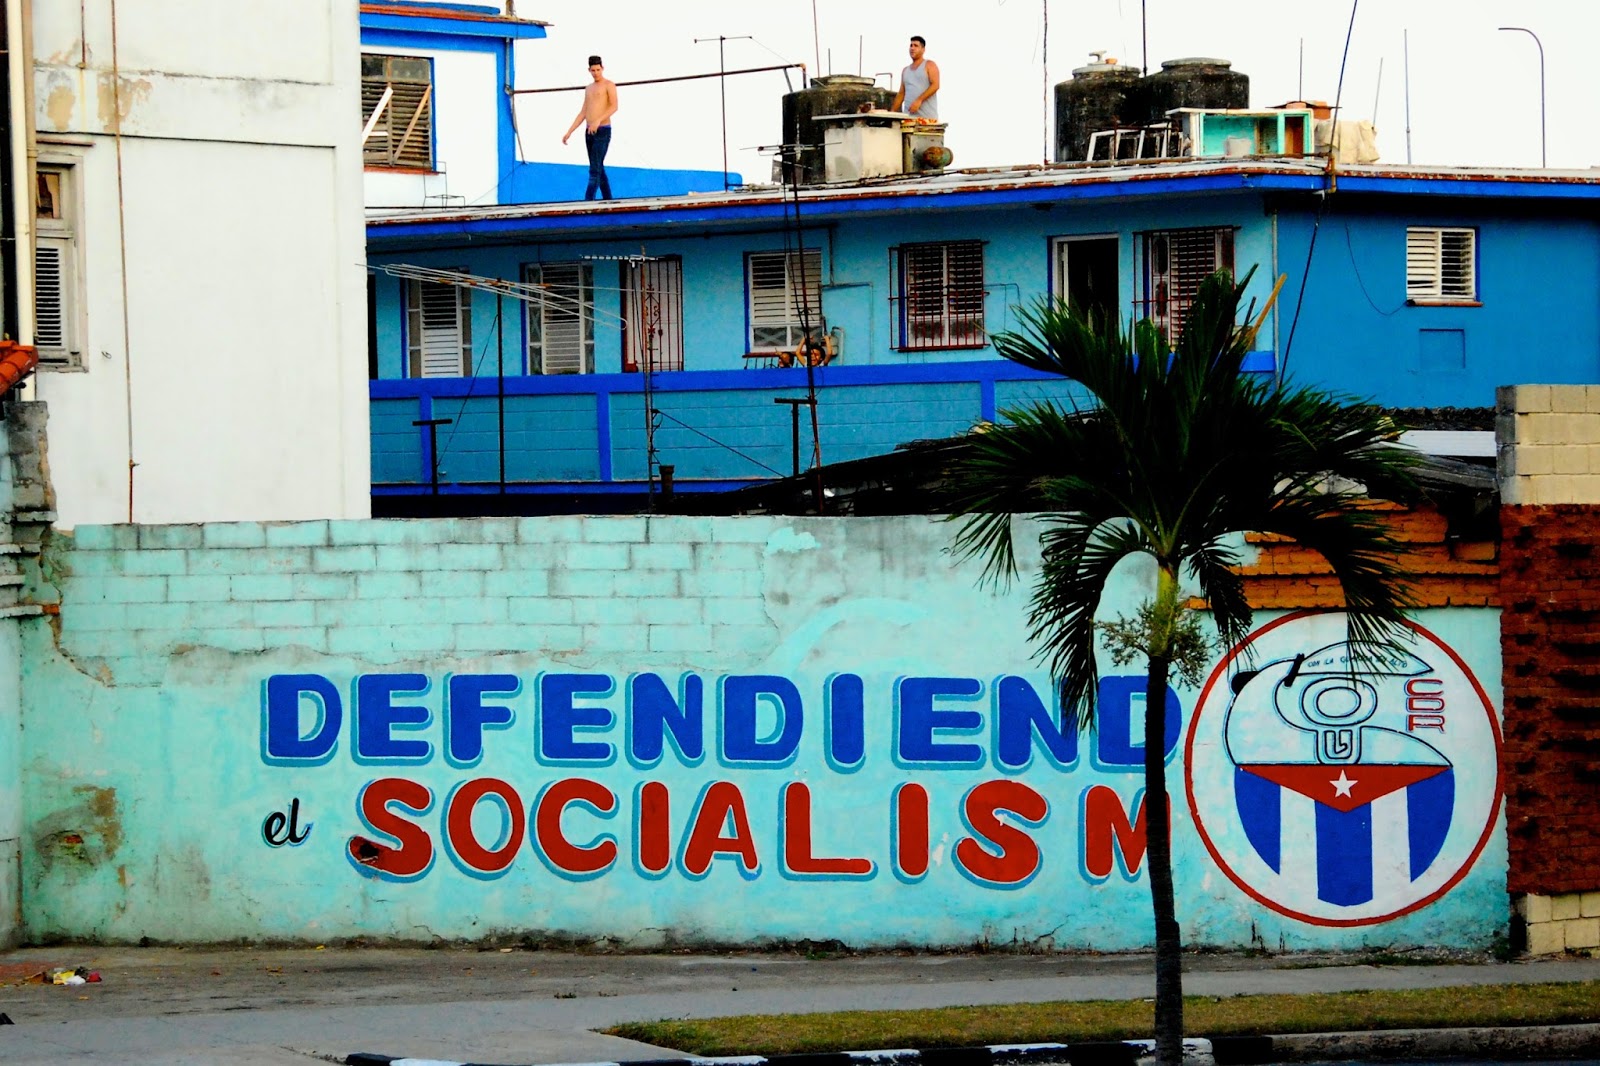 Küba: Obama gelebilir ama biz sosyalizmden vazgeçmeyiz